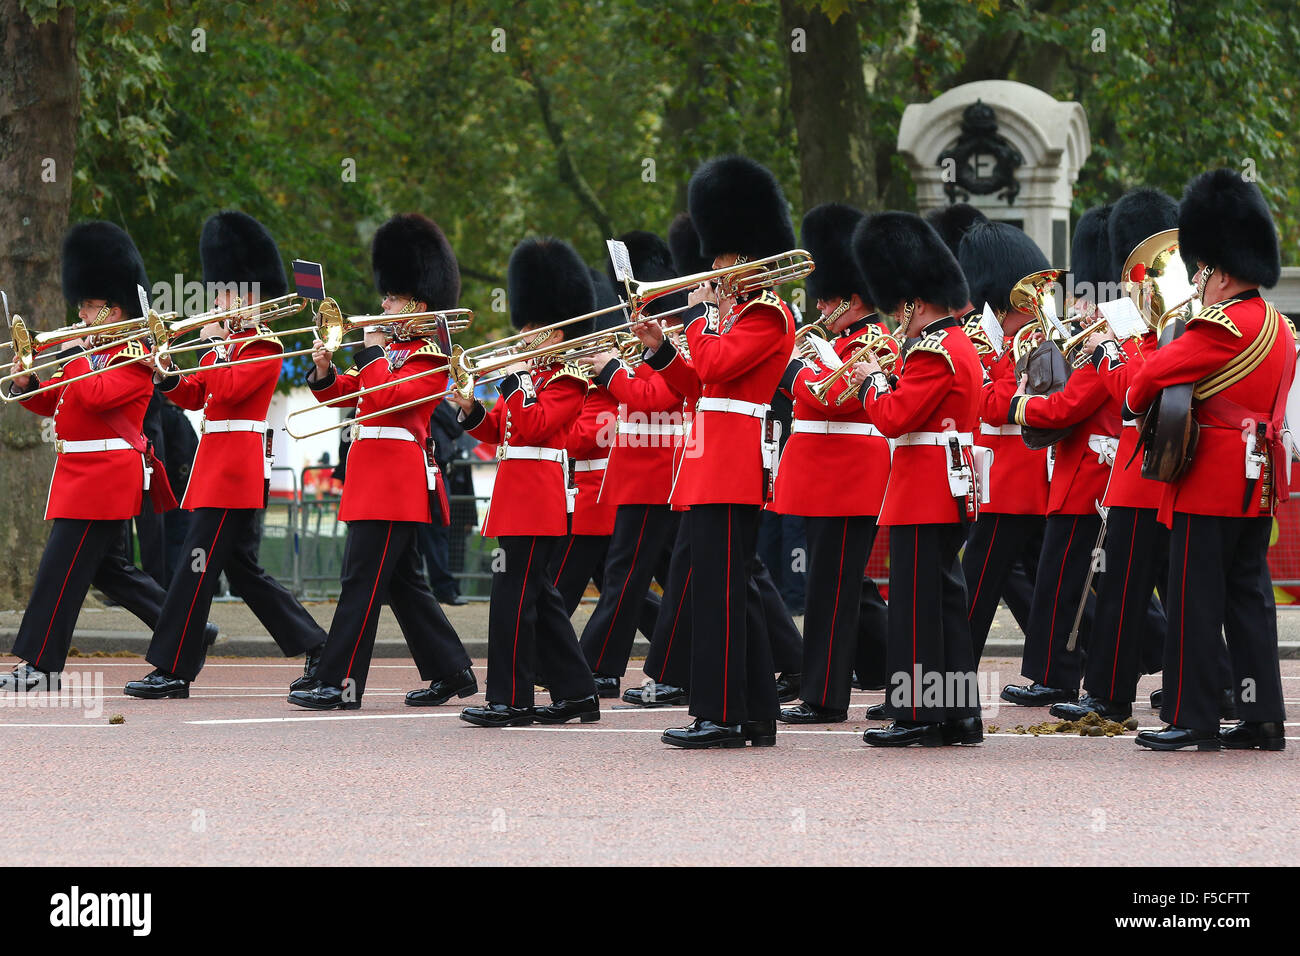 Londres, Reino Unido, 20 Oct 2015: vistas generales desde el centro comercial para el presidente chino Xi Jinping visita de Estado a Londres Foto de stock